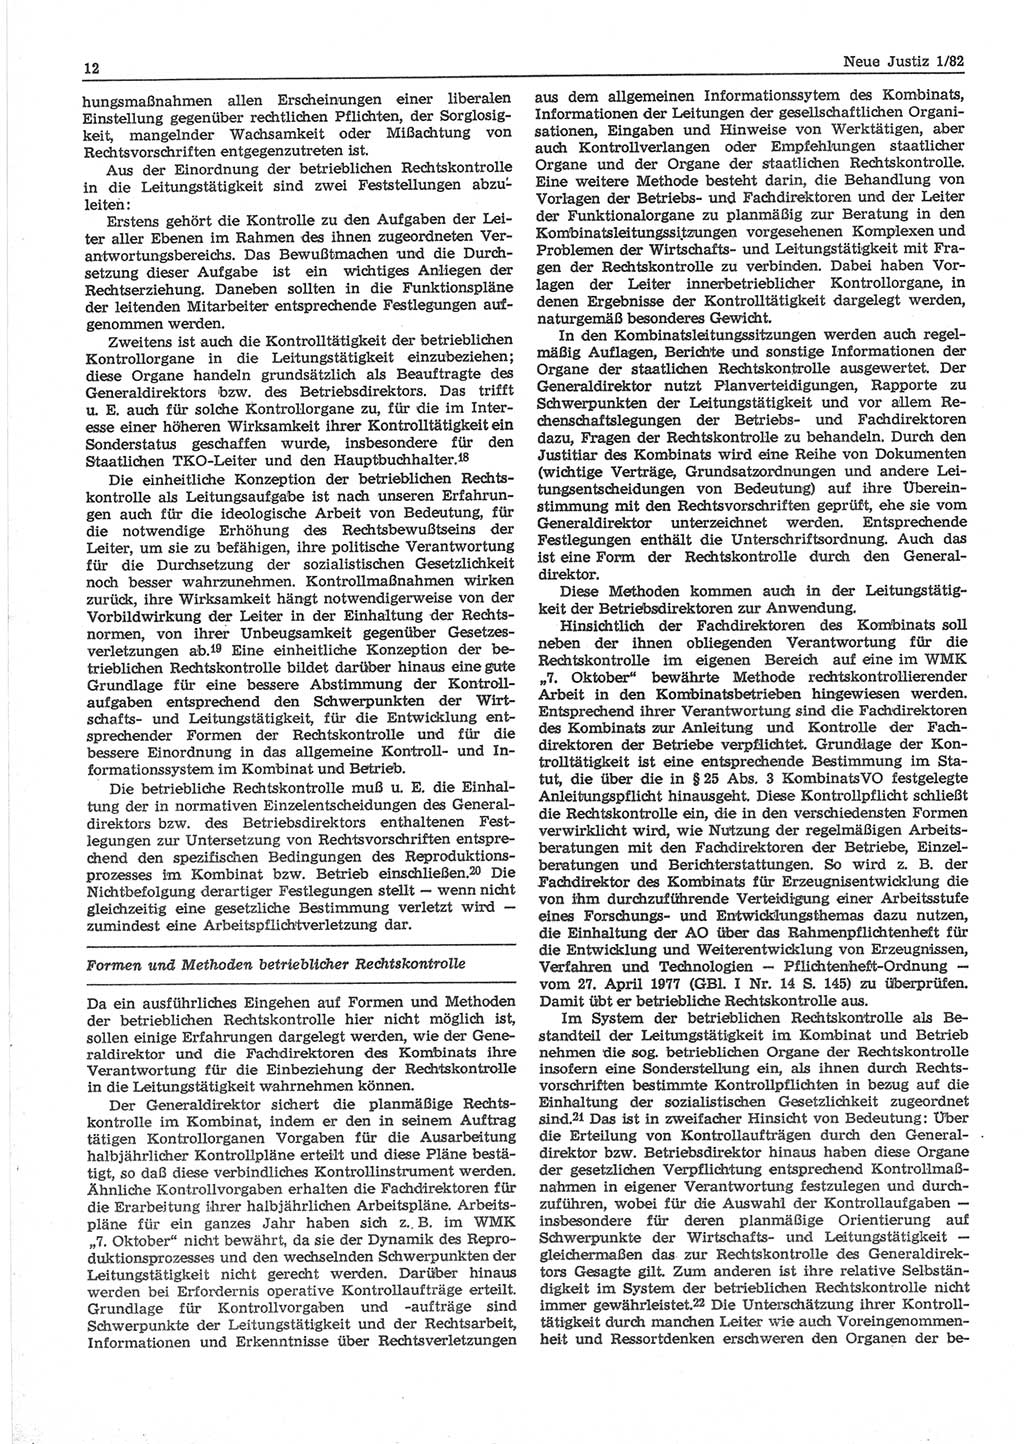 Neue Justiz (NJ), Zeitschrift für sozialistisches Recht und Gesetzlichkeit [Deutsche Demokratische Republik (DDR)], 36. Jahrgang 1982, Seite 12 (NJ DDR 1982, S. 12)